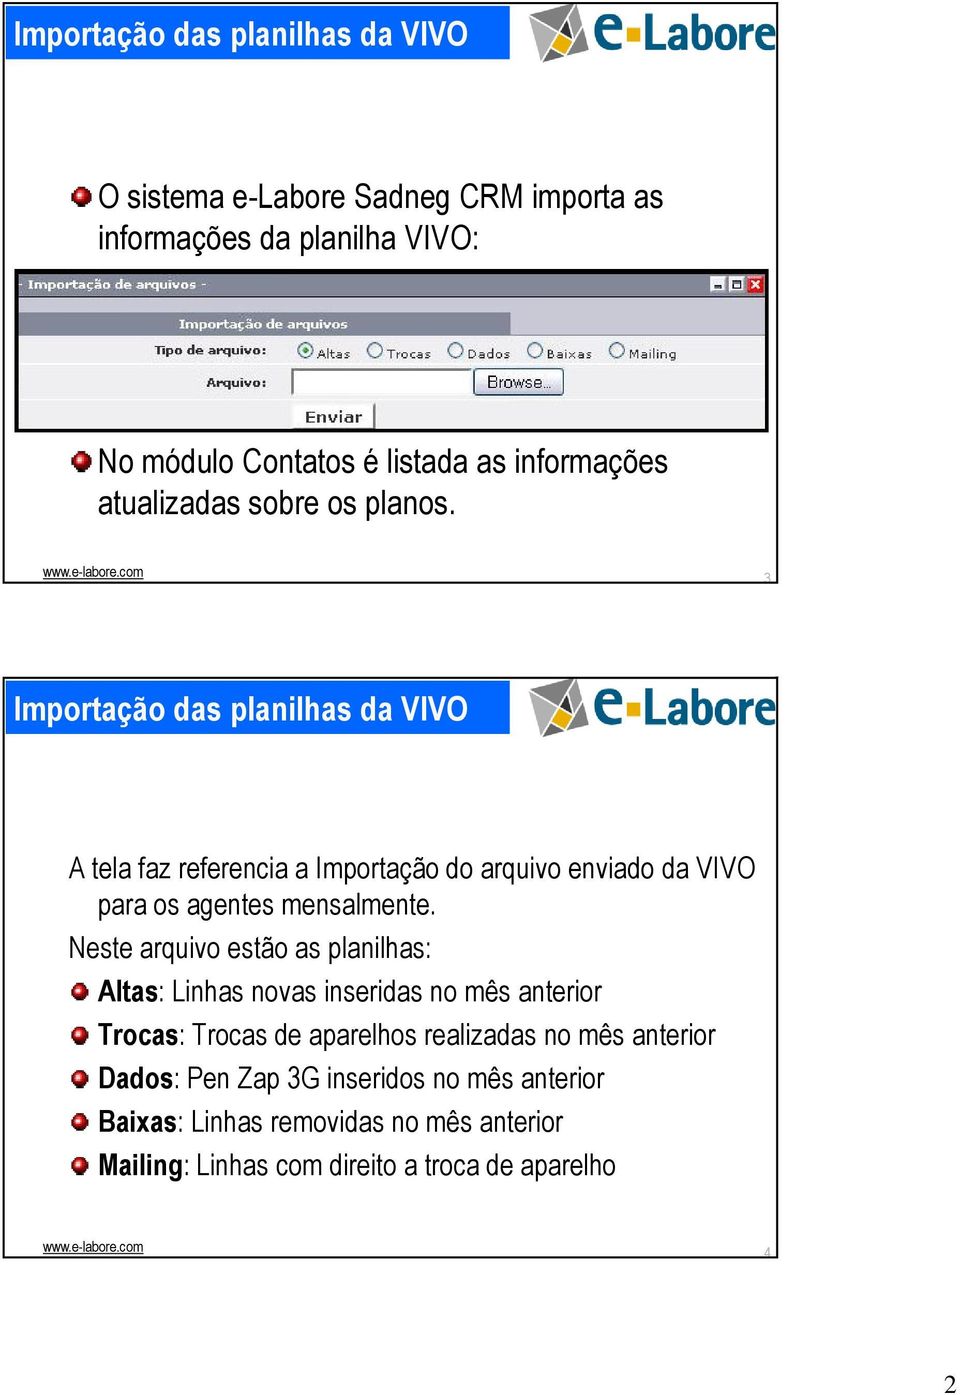 3 Importação das planilhas da VIVO A tela faz referencia a Importação do arquivo enviado da VIVO para os agentes mensalmente.